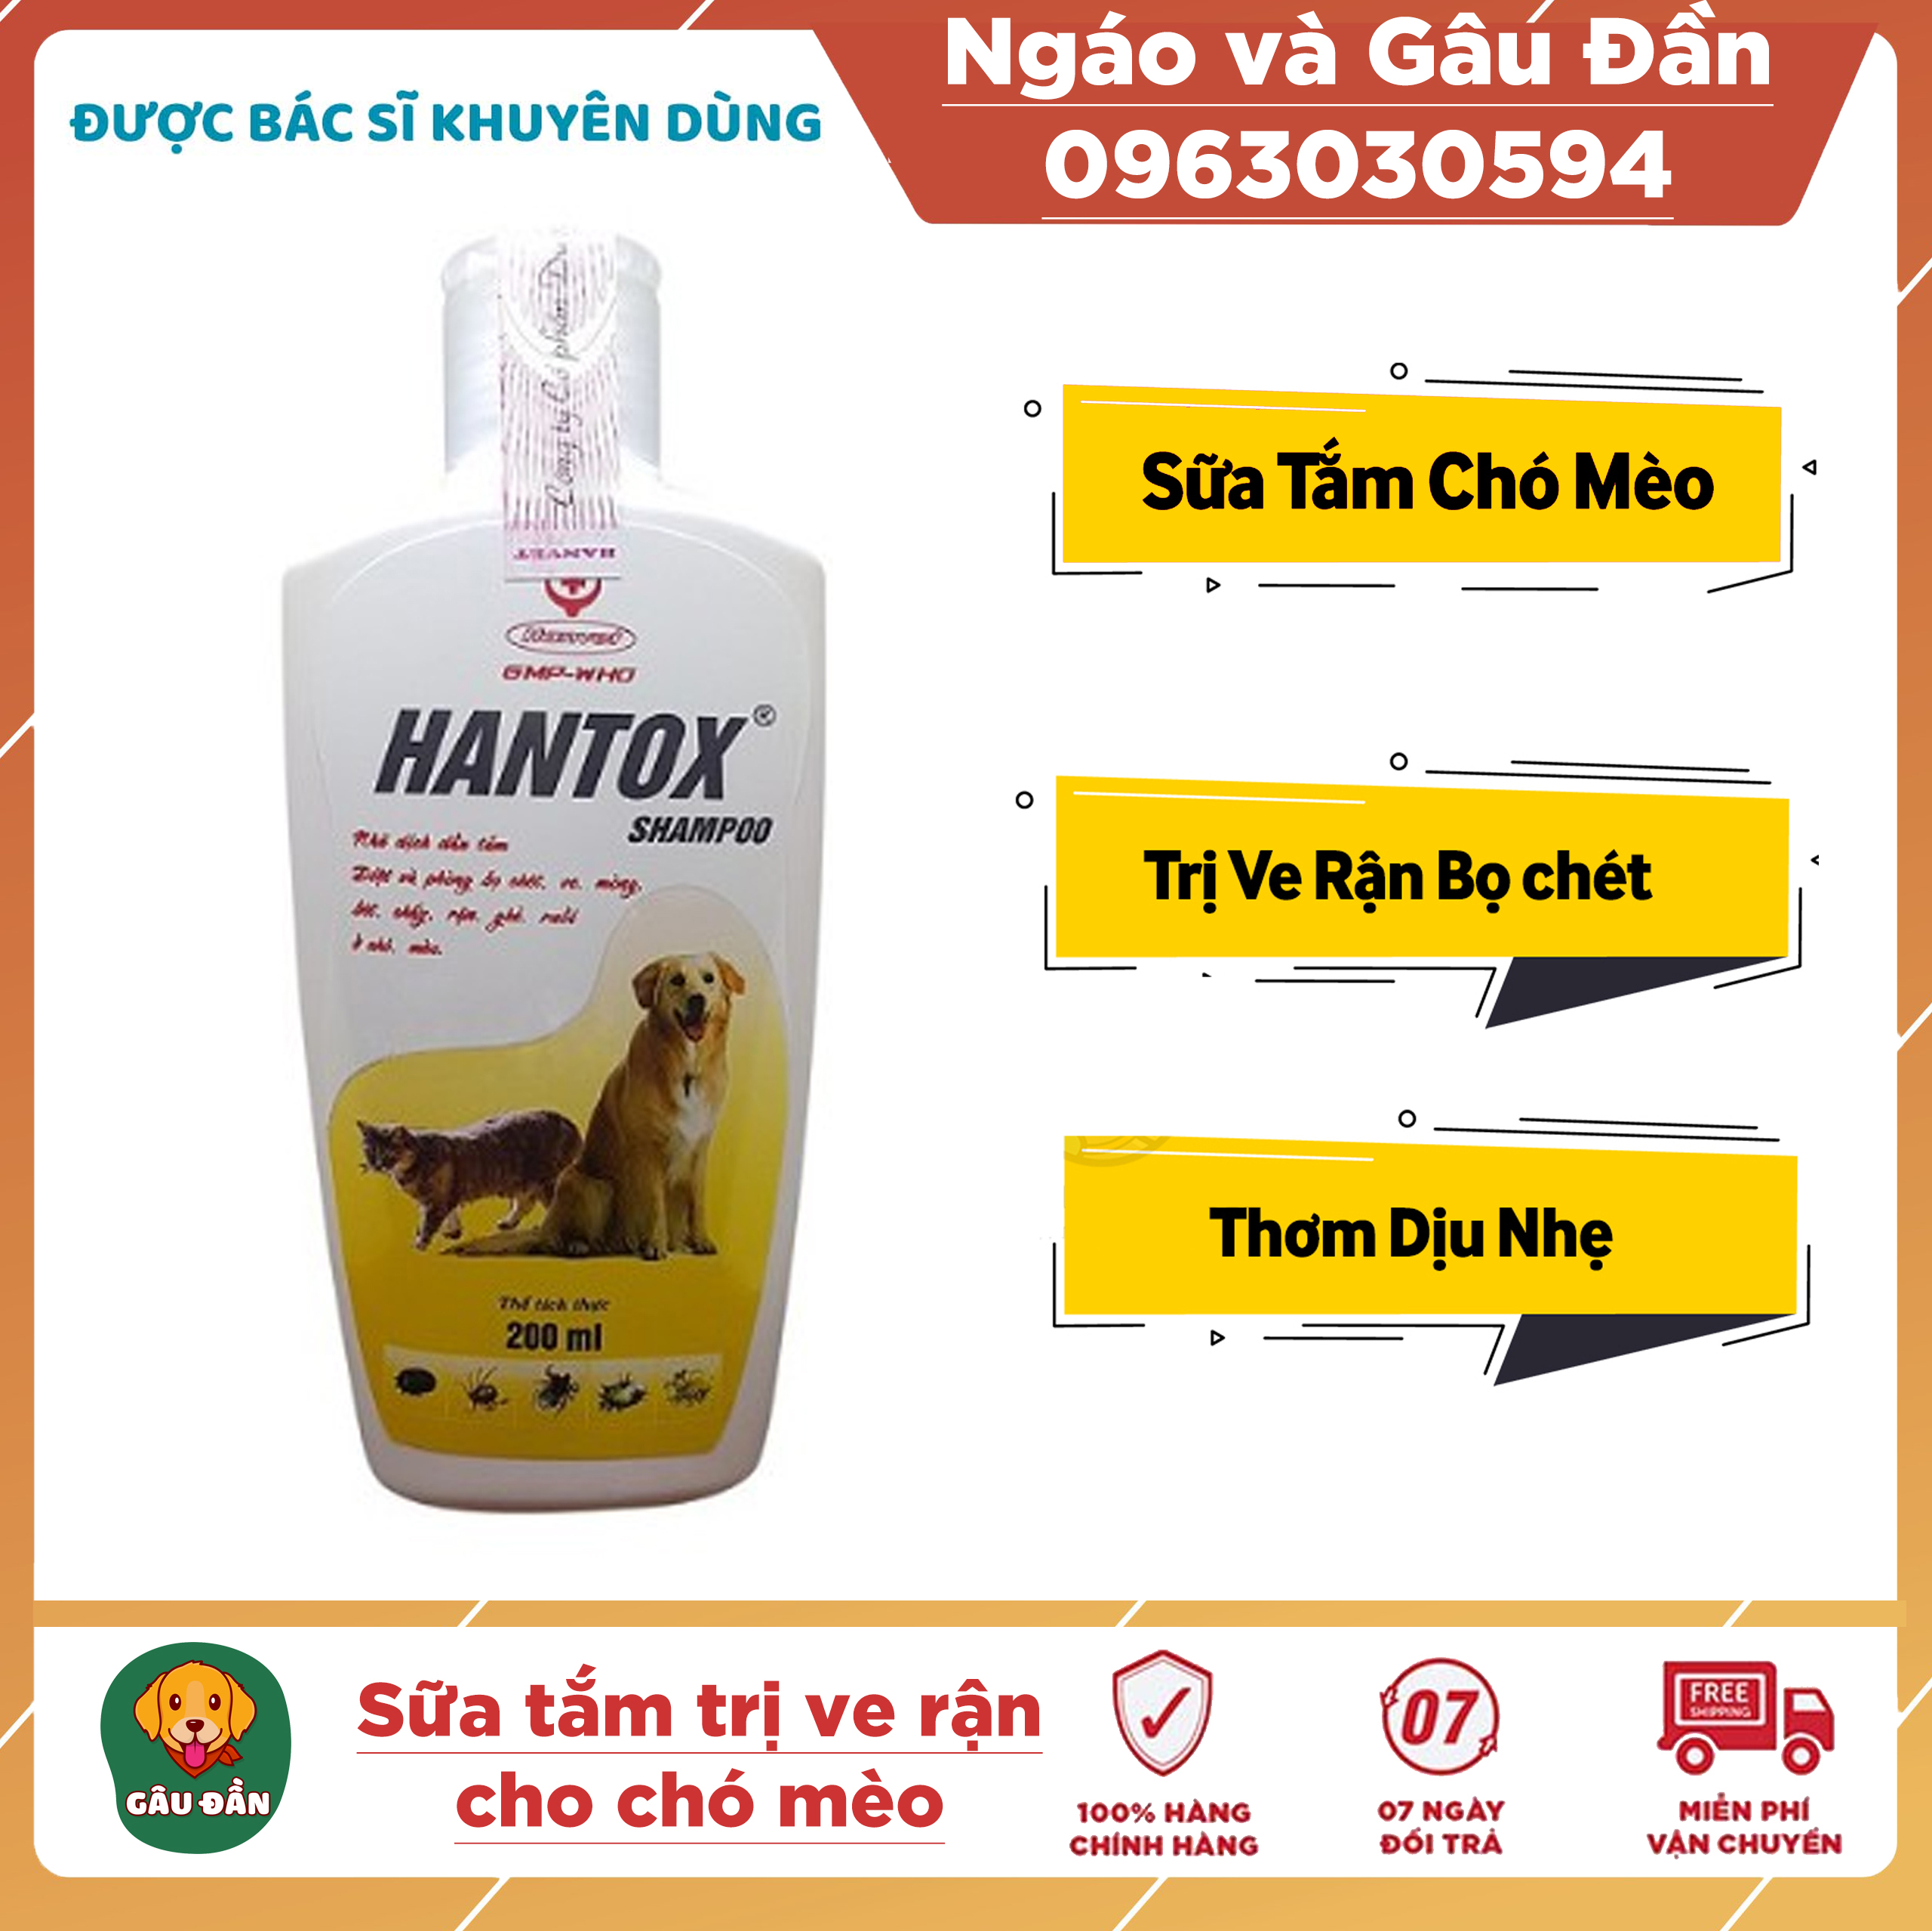 Sữa Tắm Trị Ve Rận Bọ Chét Cho Chó Mèo Hantox Shampoo Vàng 200ml